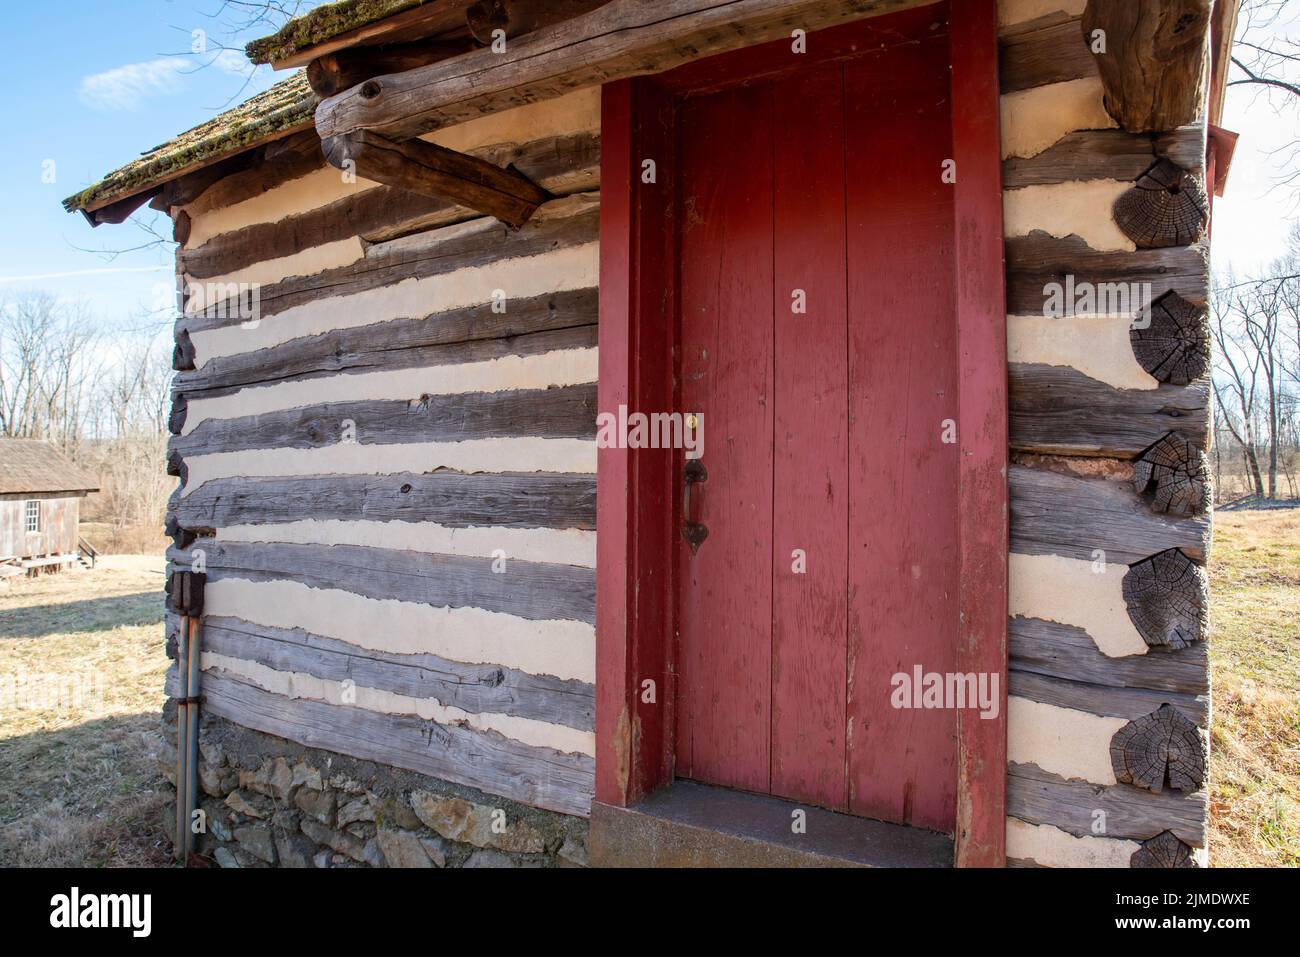 Extérieur de la cabane en rondins coloniale de Pennsylvanie avec porte rouge Banque D'Images